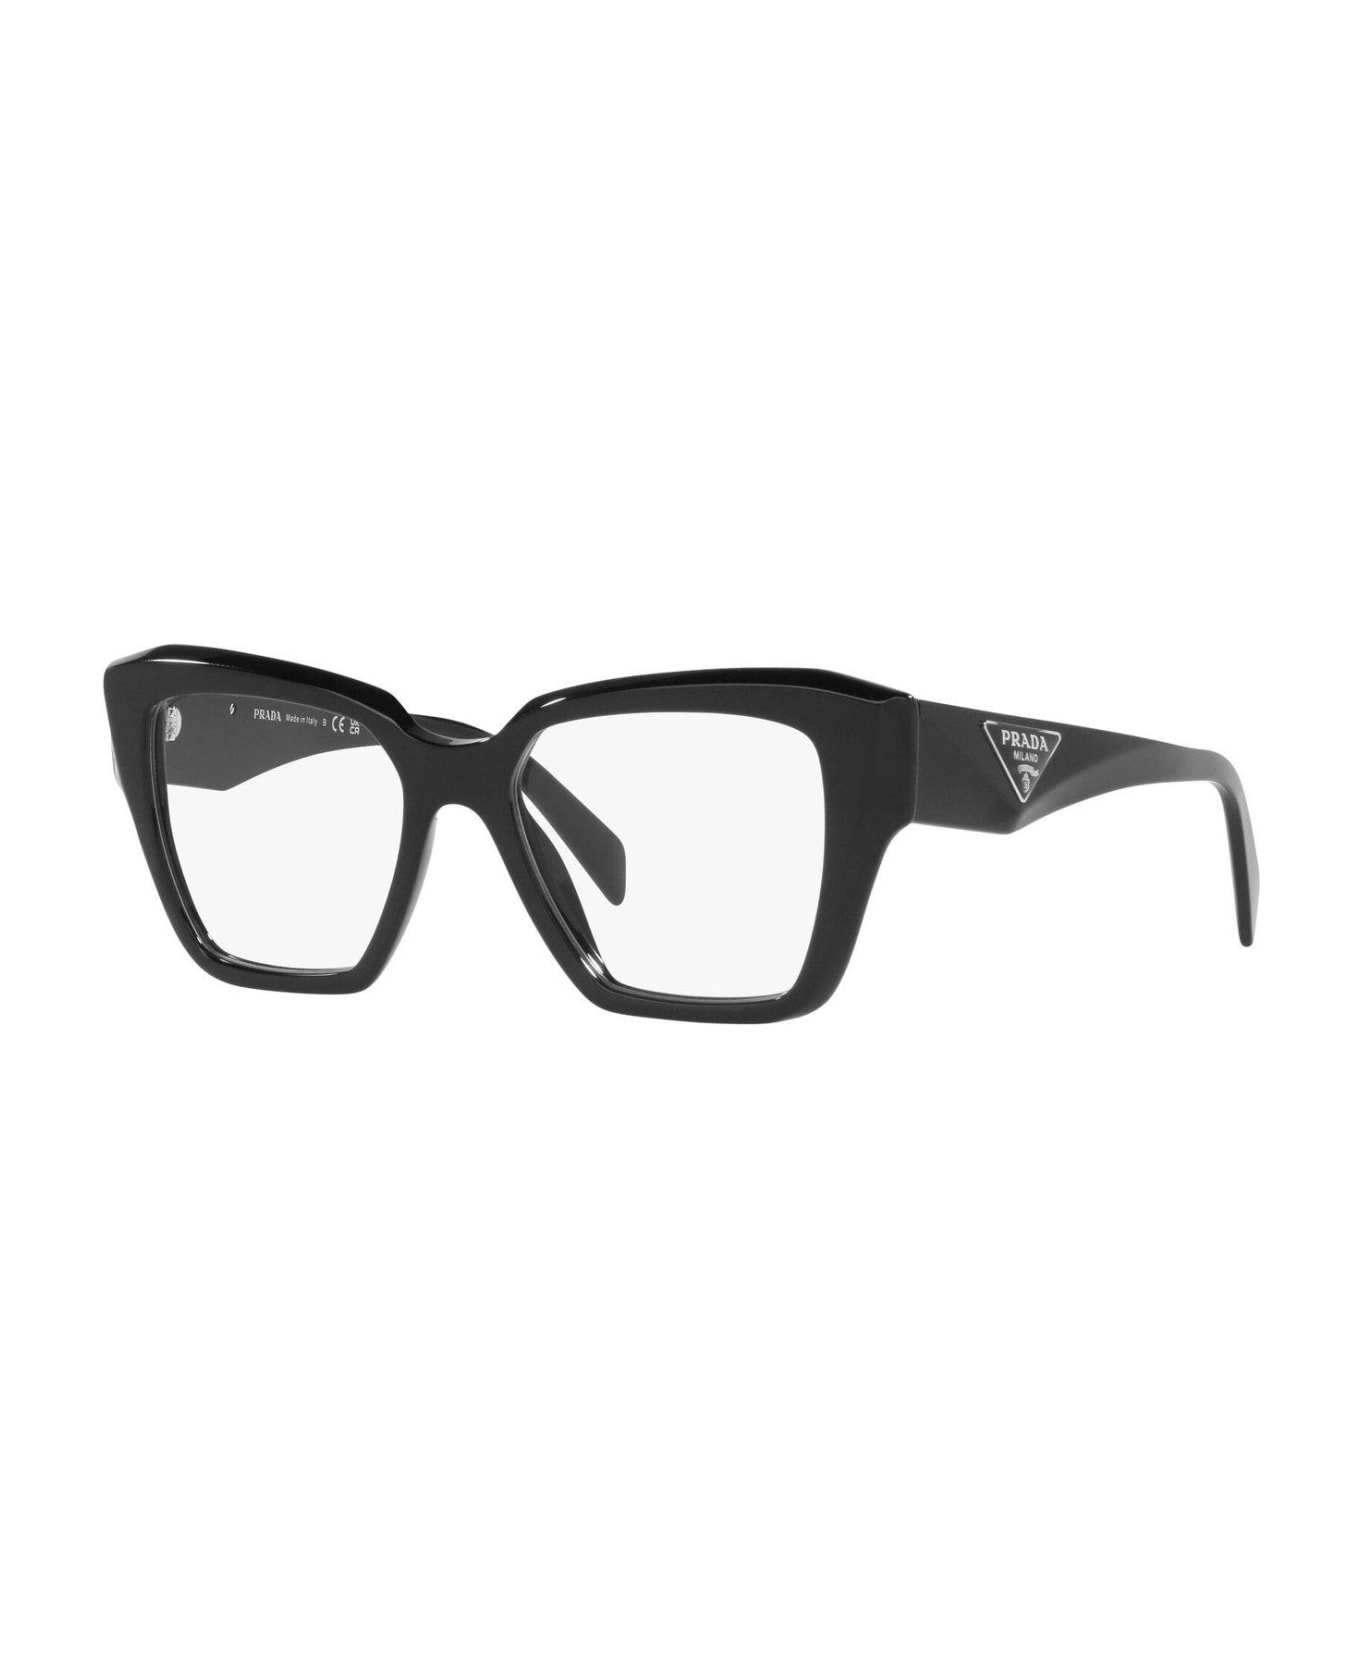 Prada Eyewear Square Frame Glasses - 1AB1O1 アイウェア